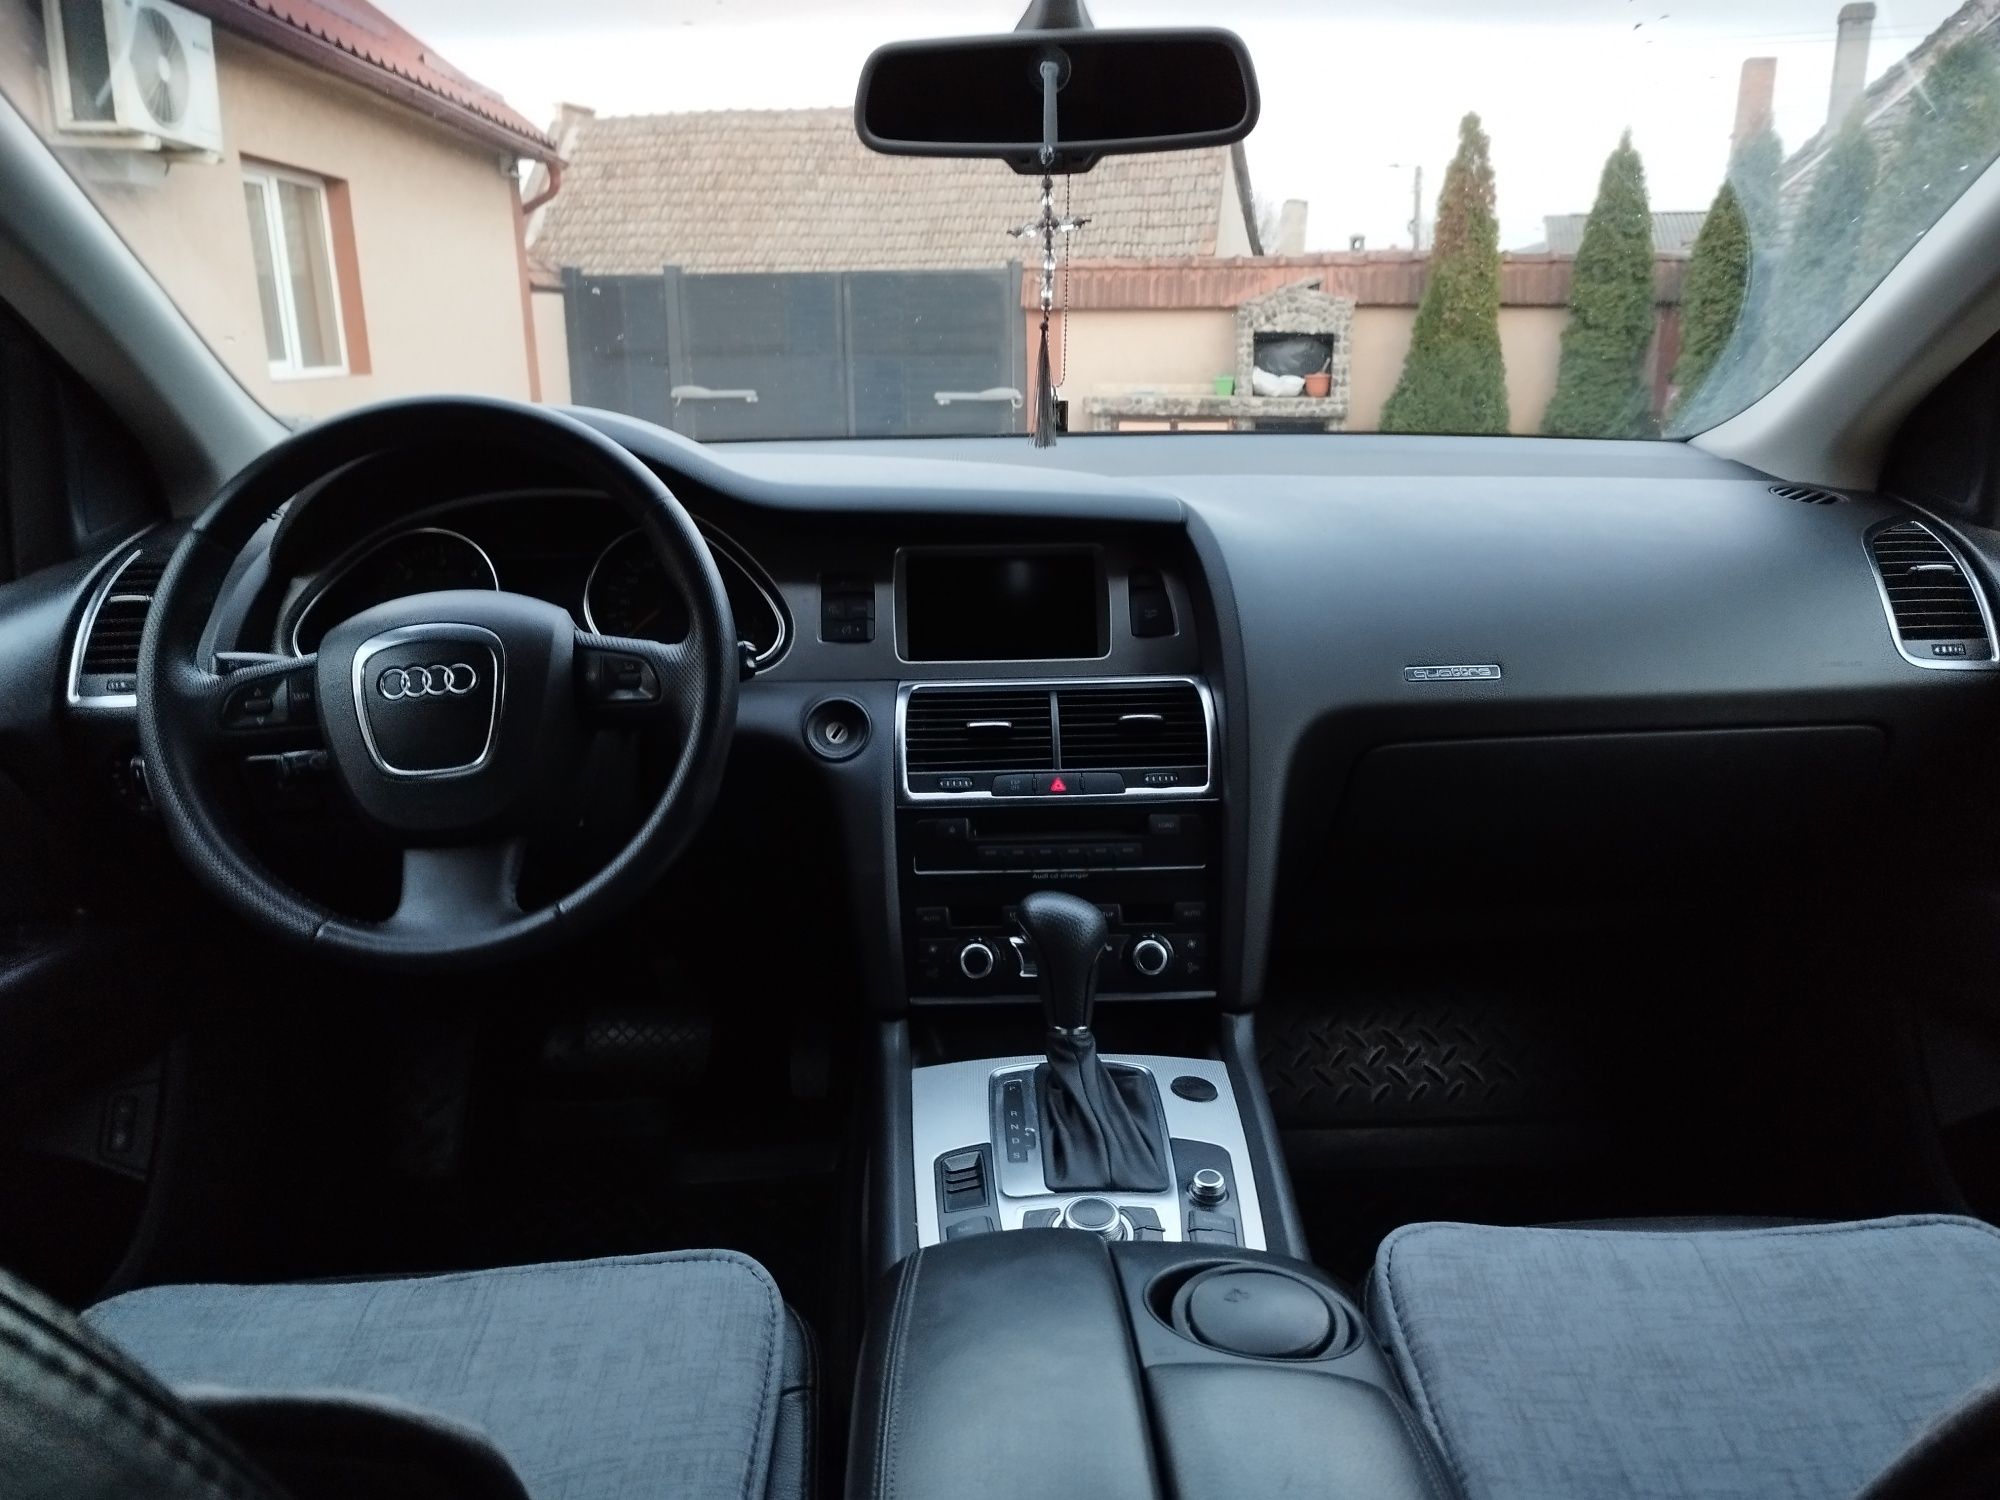 Audi Q7 suspensie pe arcuri,7 locuri